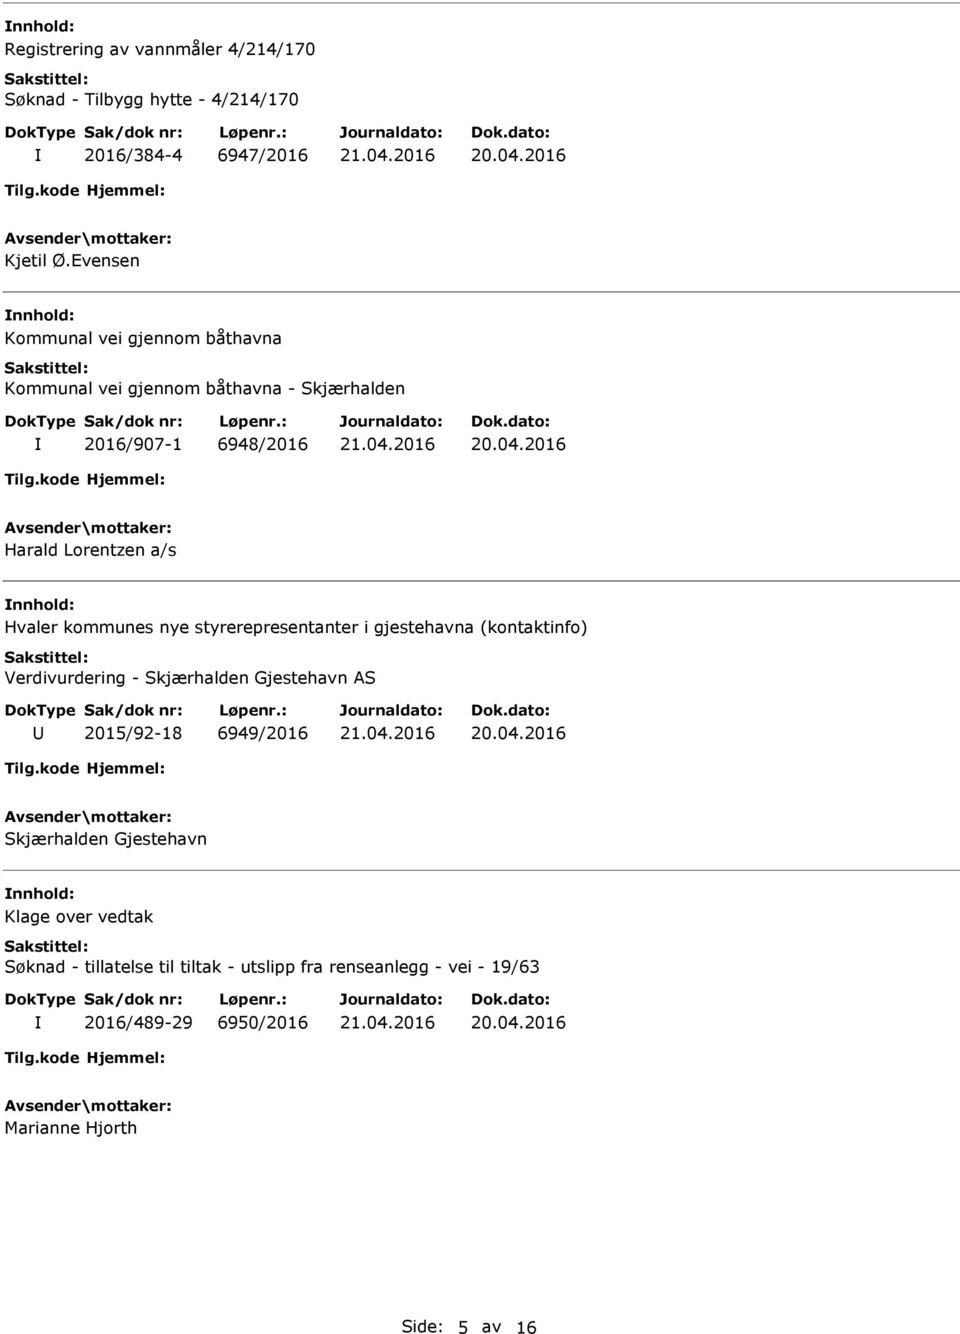 Hvaler kommunes nye styrerepresentanter i gjestehavna (kontaktinfo) Verdivurdering - Skjærhalden Gjestehavn AS 2015/92-18